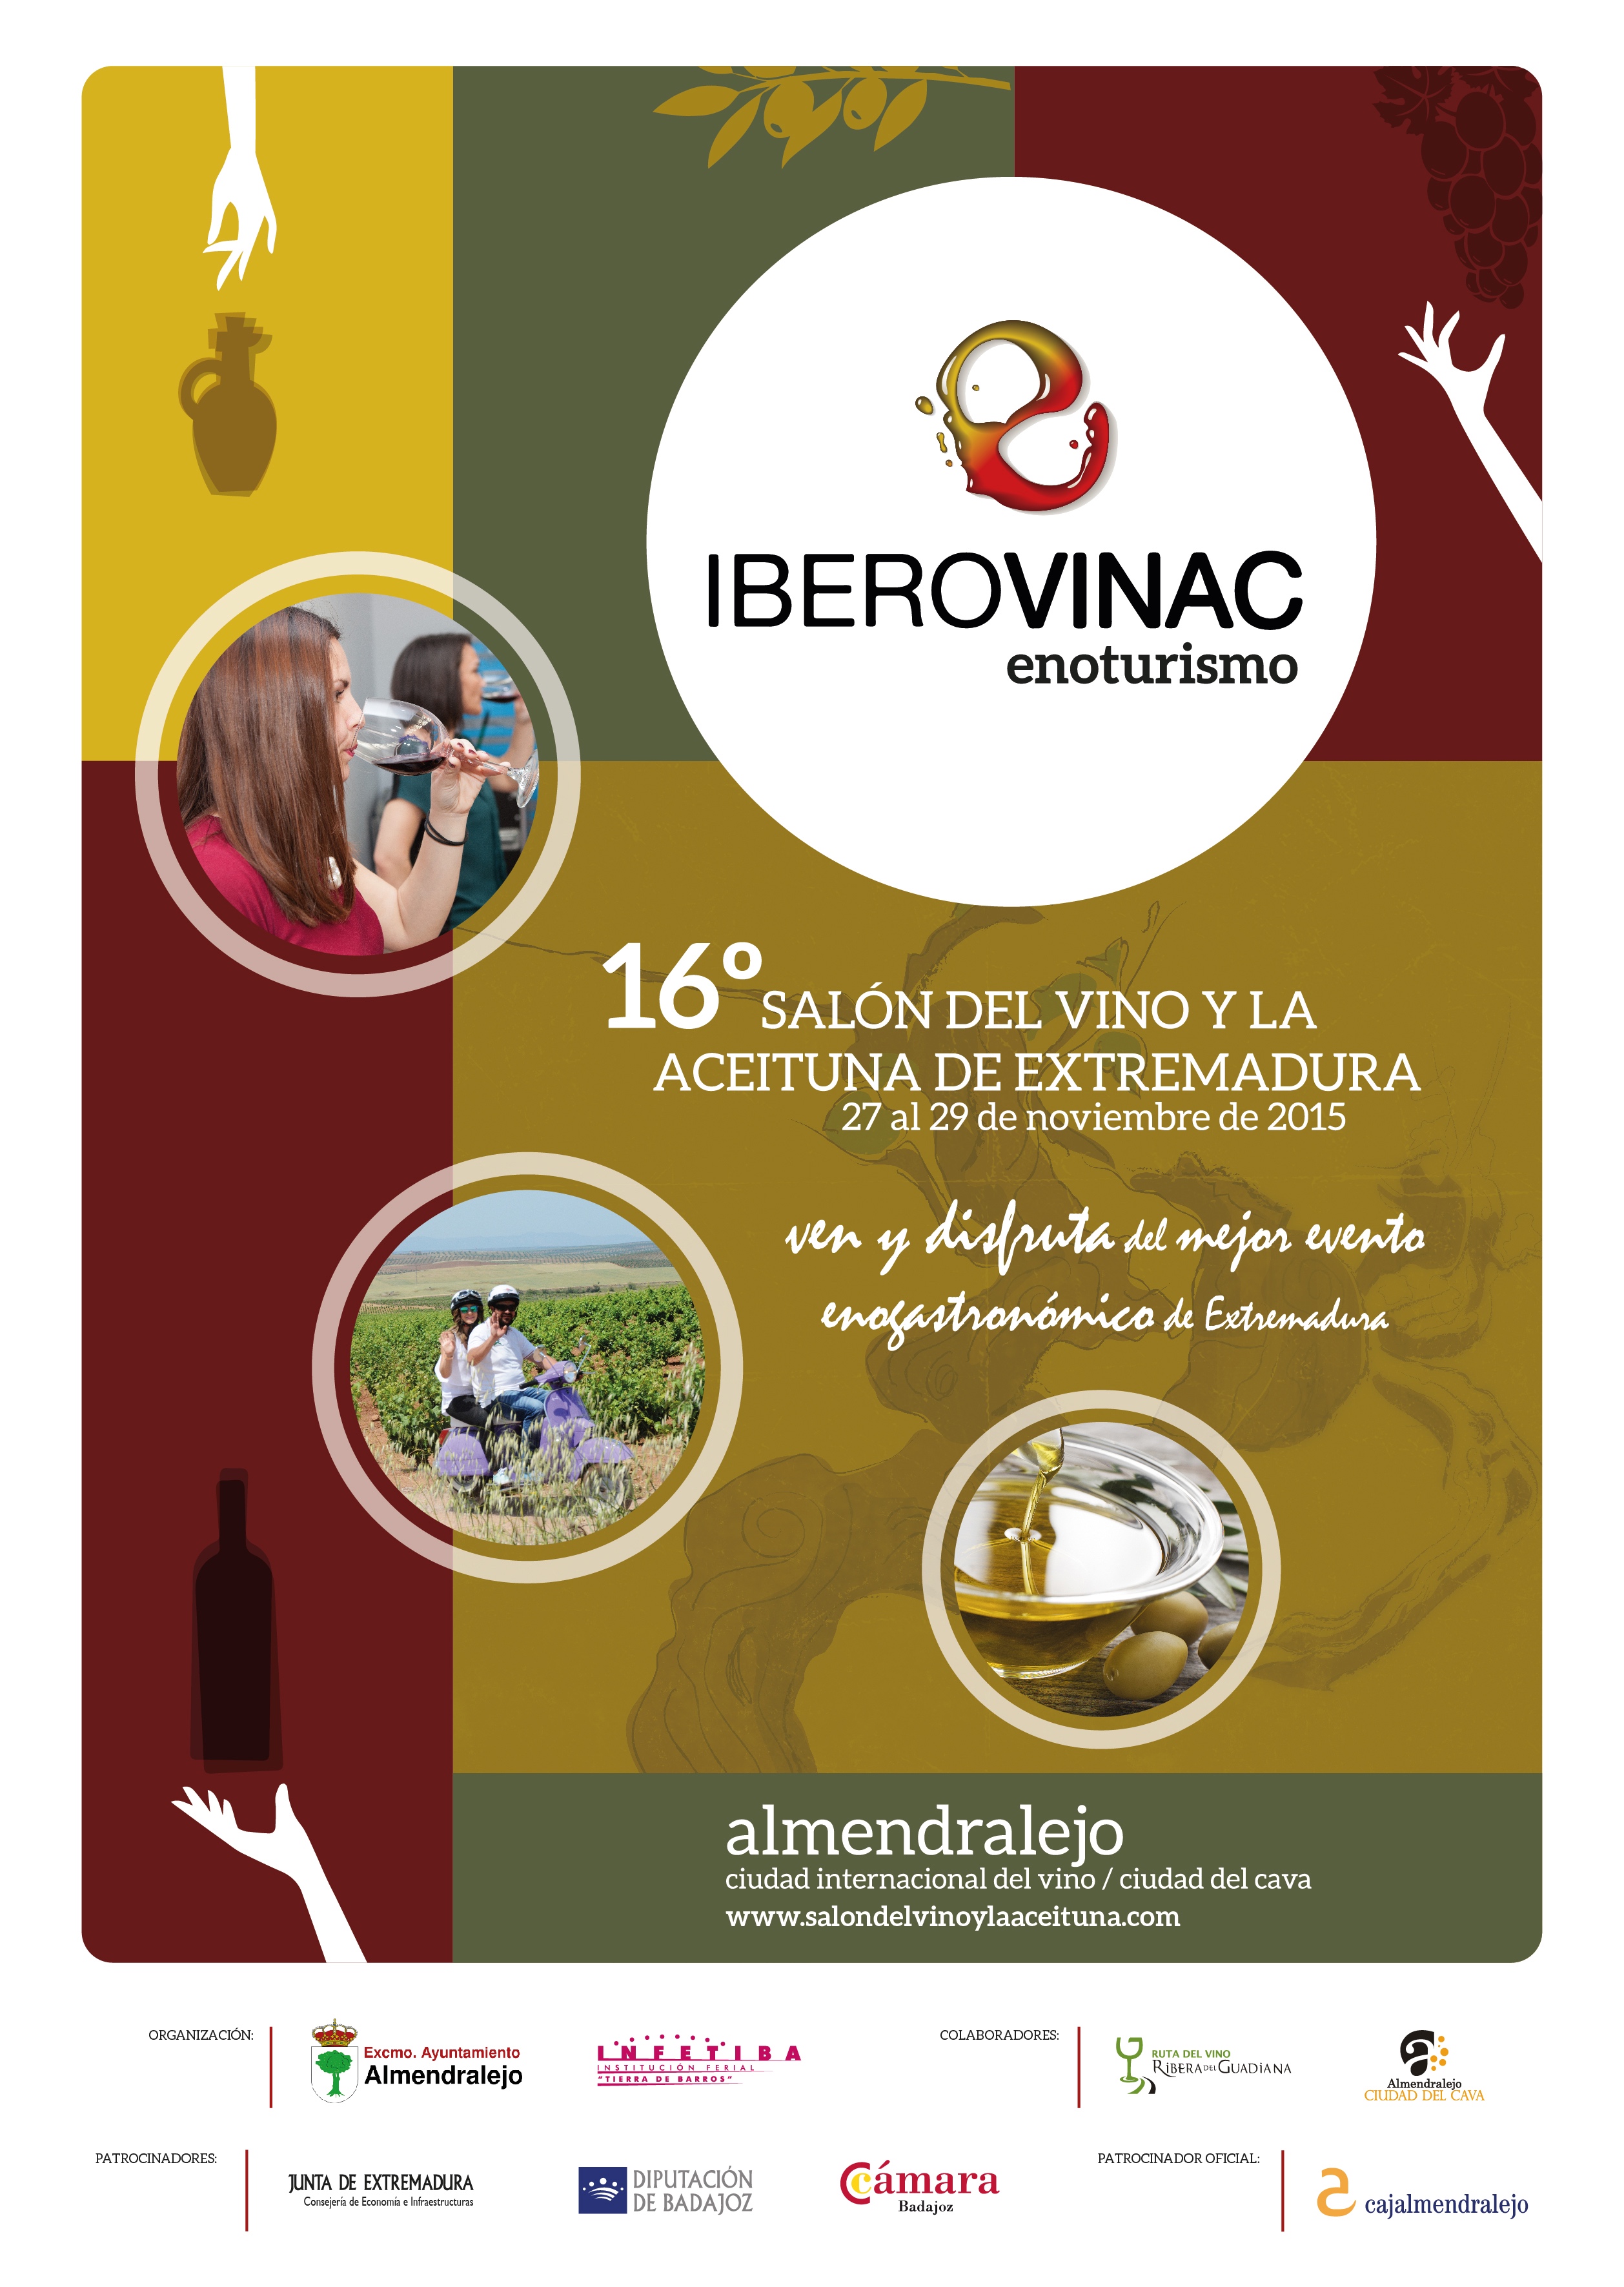 Iberovinac 2015 16 salon del vino y la aceituna de extremadura almendralejo